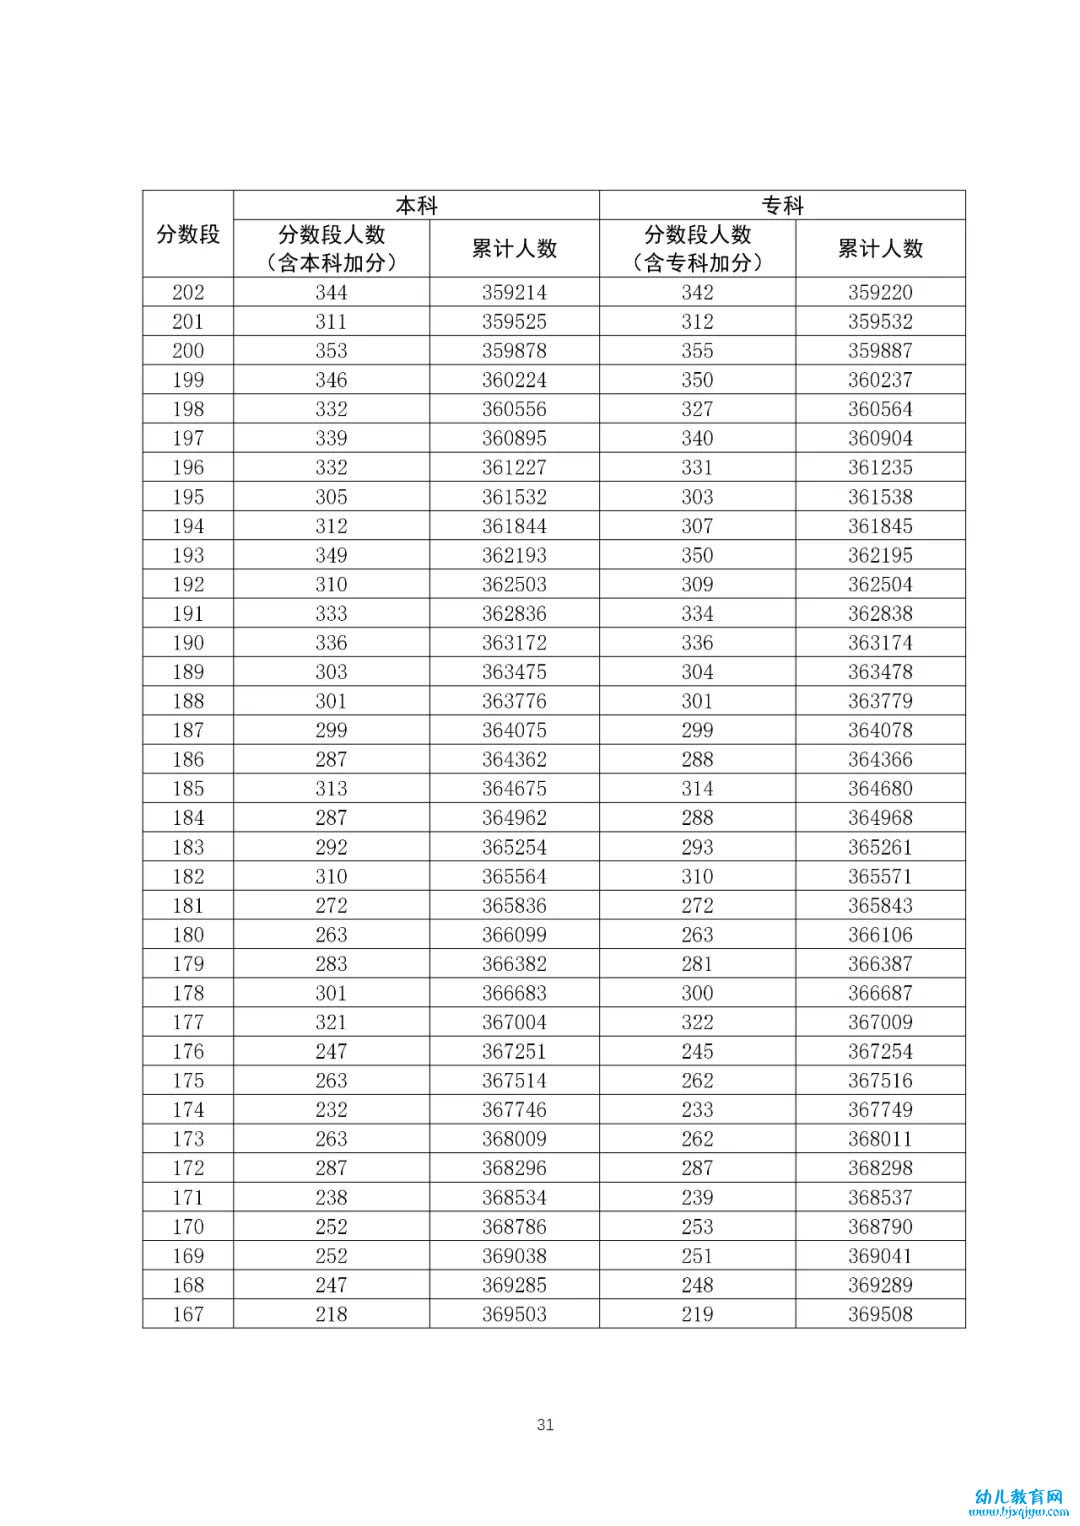 八省联考成绩对照:广东2020高考理工类一分一段表